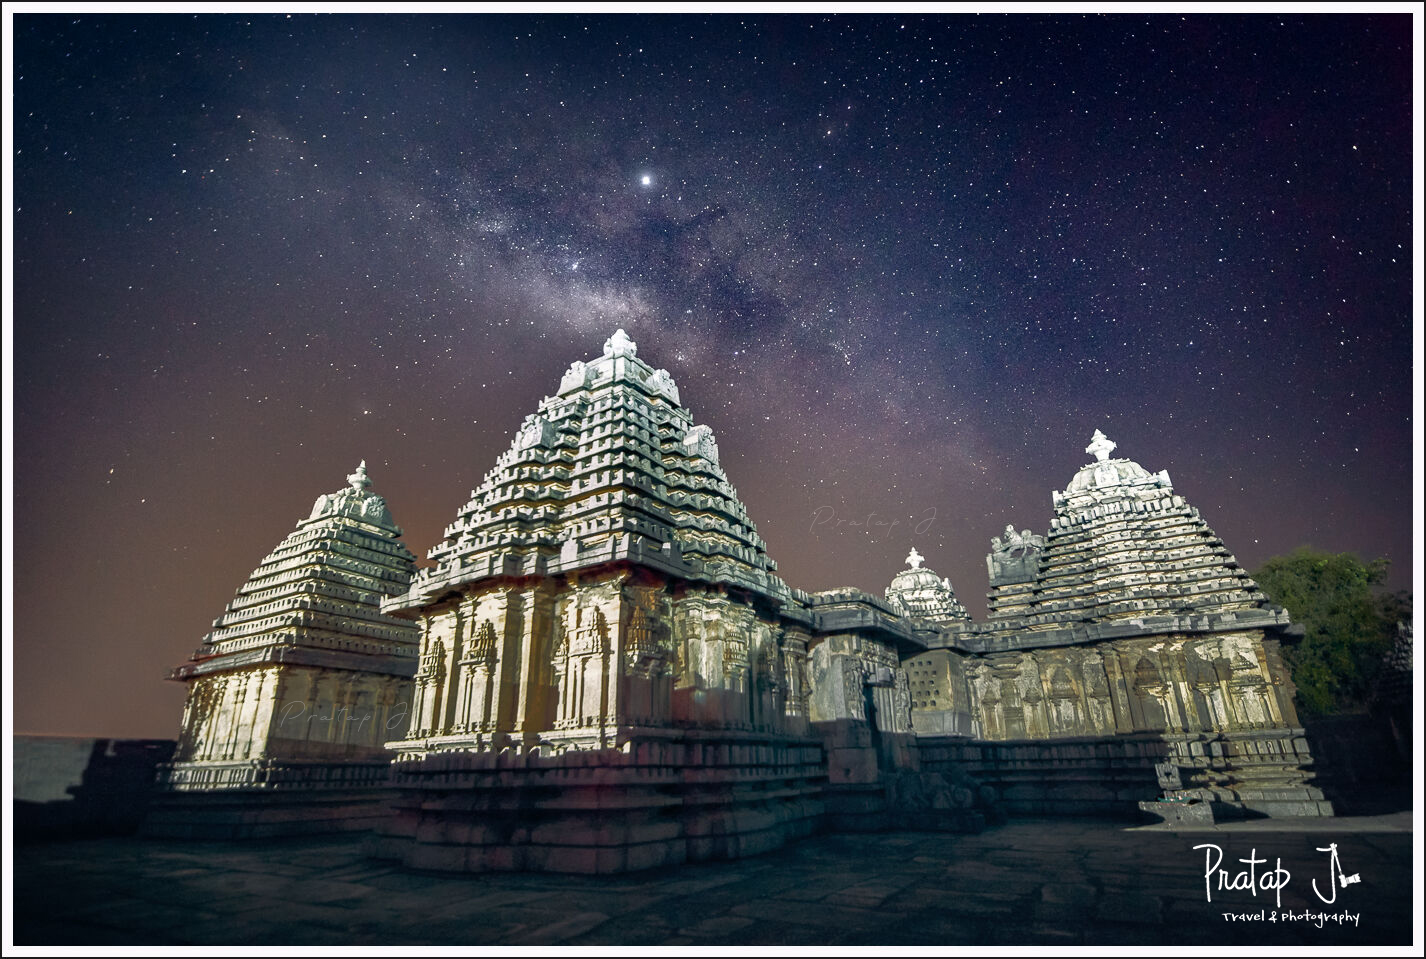 Milky Way over an ancient Hindu Hoysala Temple in Karnataka